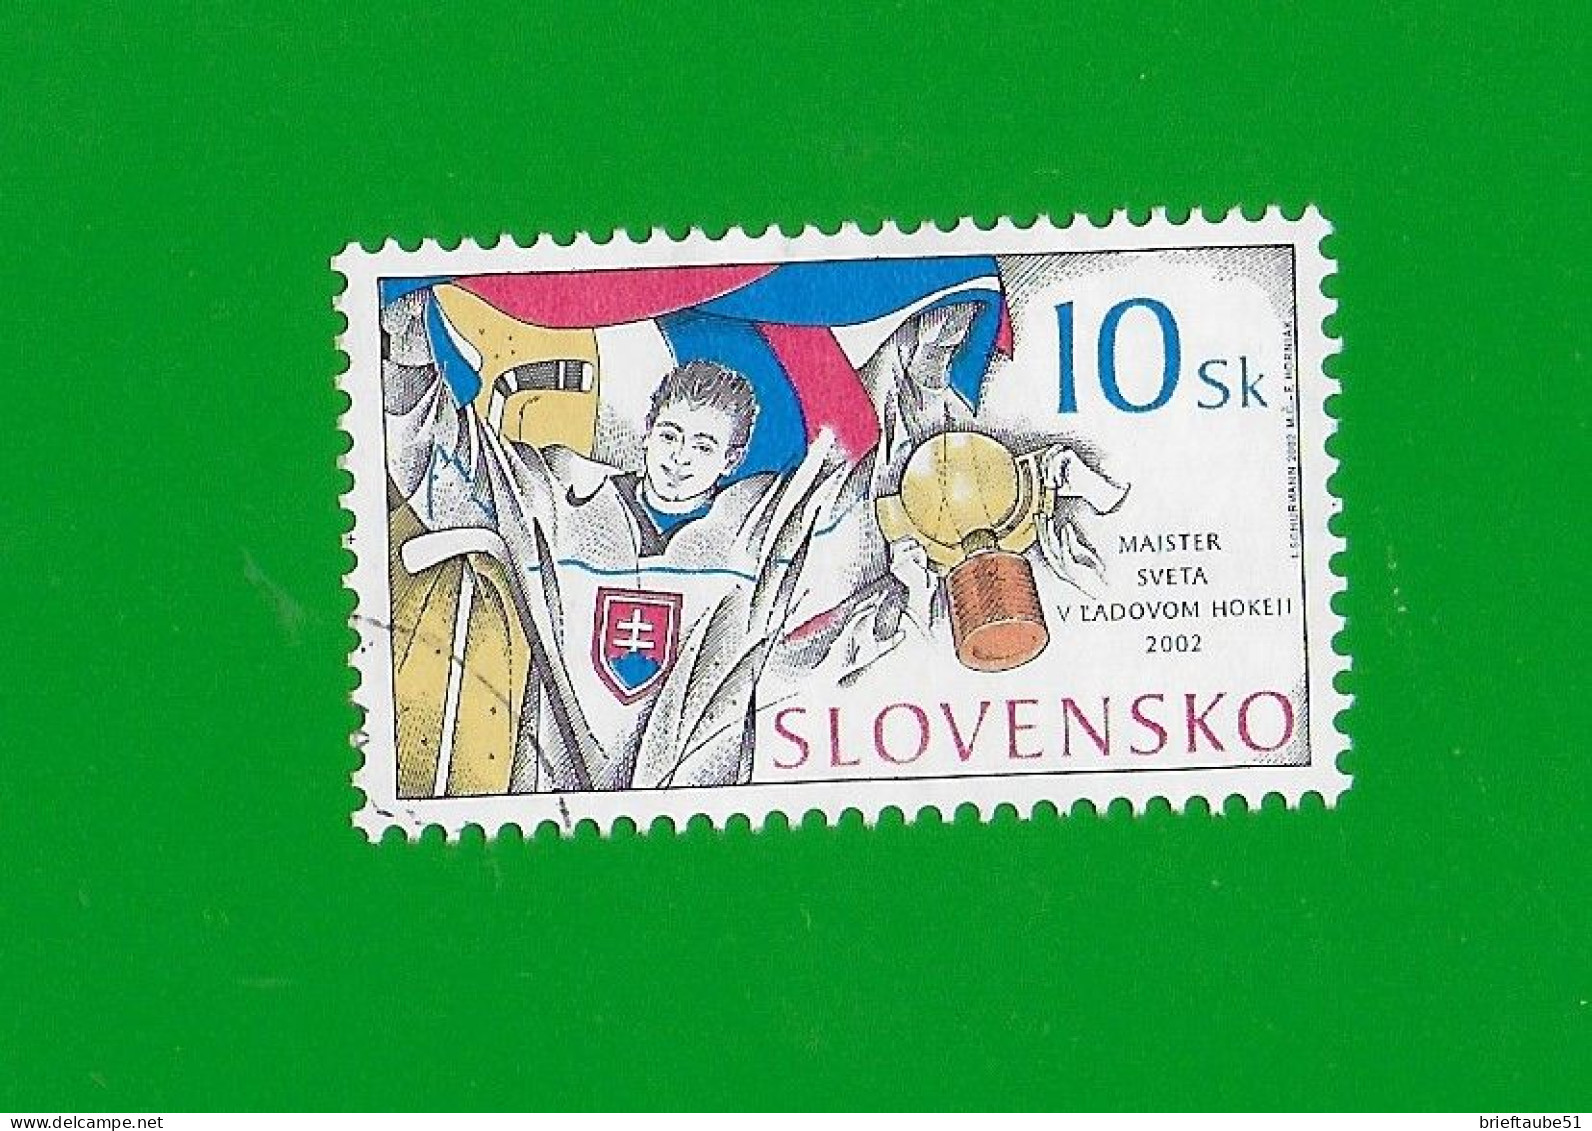 SLOVAKIA REPUBLIC 2002 Gestempelt°Used/Bedarf  MiNr. 432  #  "Eishockey - WM In Schweden # Goldmedaille" - Gebraucht